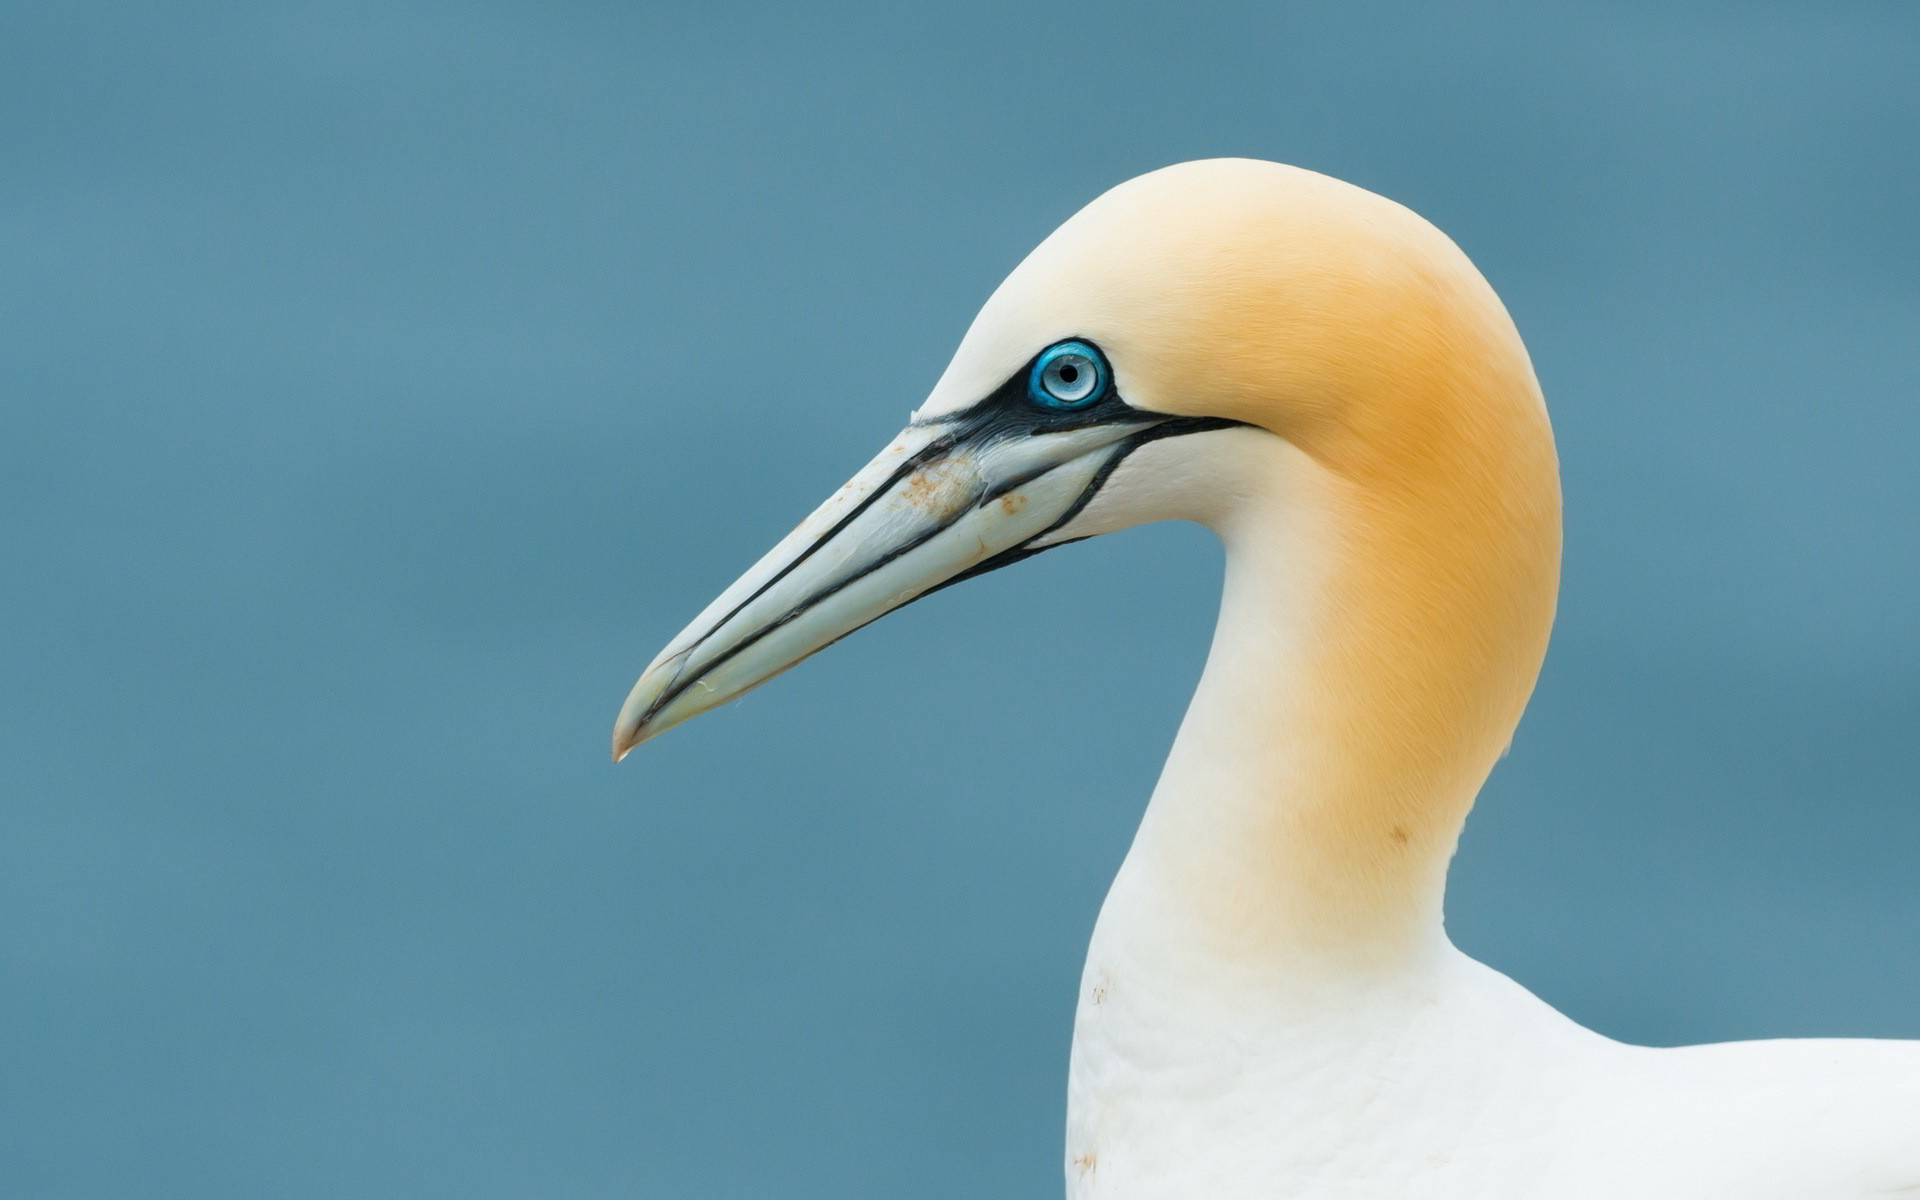 Gannet bird